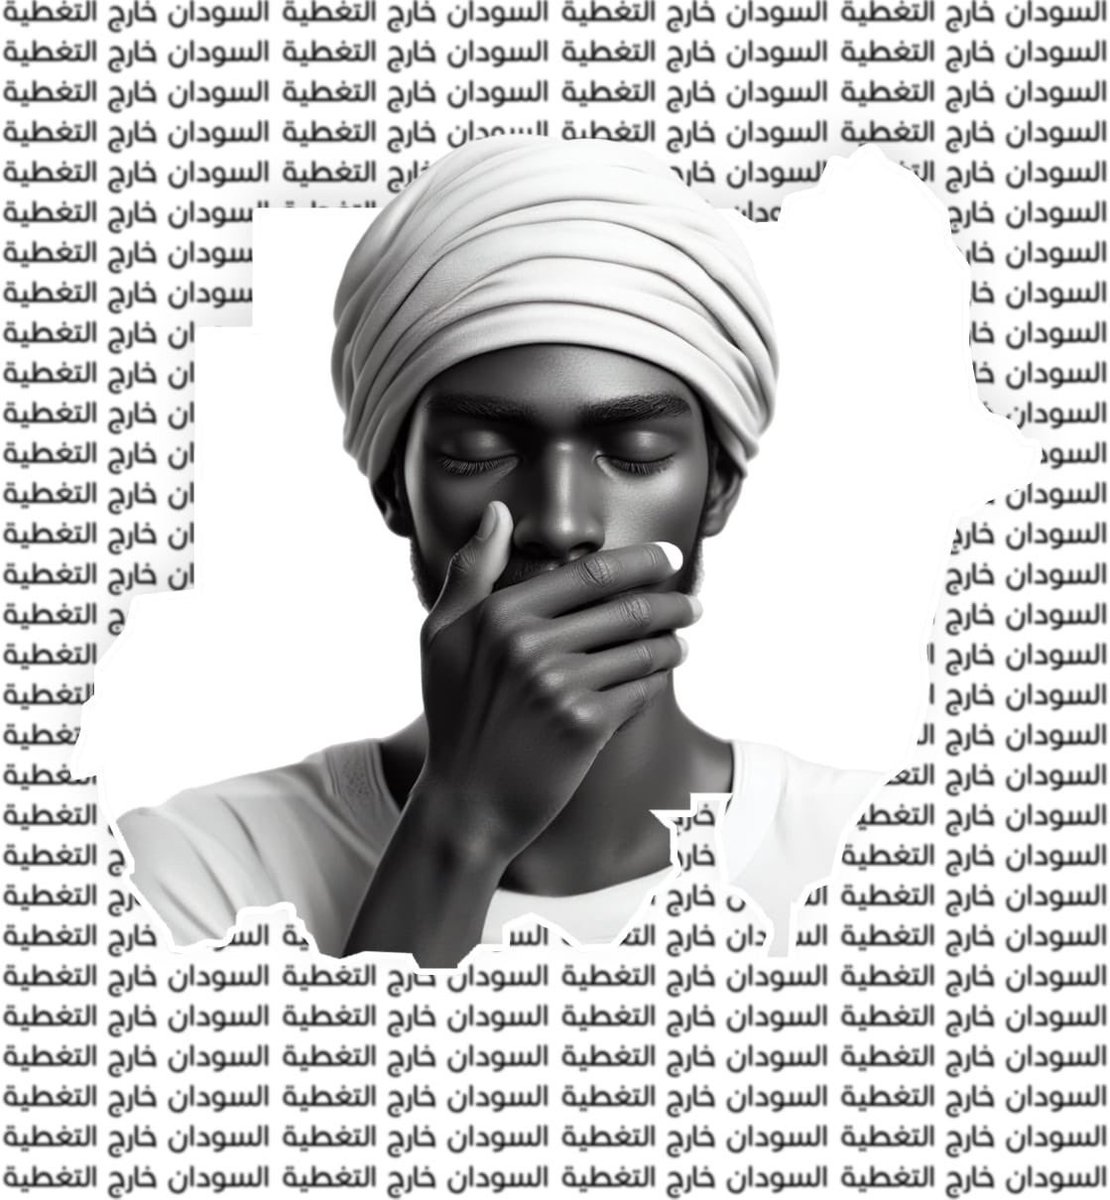 Sudan’da iletişimin kesilmesinin üzerinden bir hafta geçti. RSF dış dünyayla alakasını kestiği Darfur’da sessiz bir soykırım gerçekleştiriyor. En azından dualarımızda unutmayalım Sudan’ı ve orada olup bitenleri de öğrenmeye ve duyurmaya çalışalım. #Sudan_Blackout #KeepEyesOnSudan